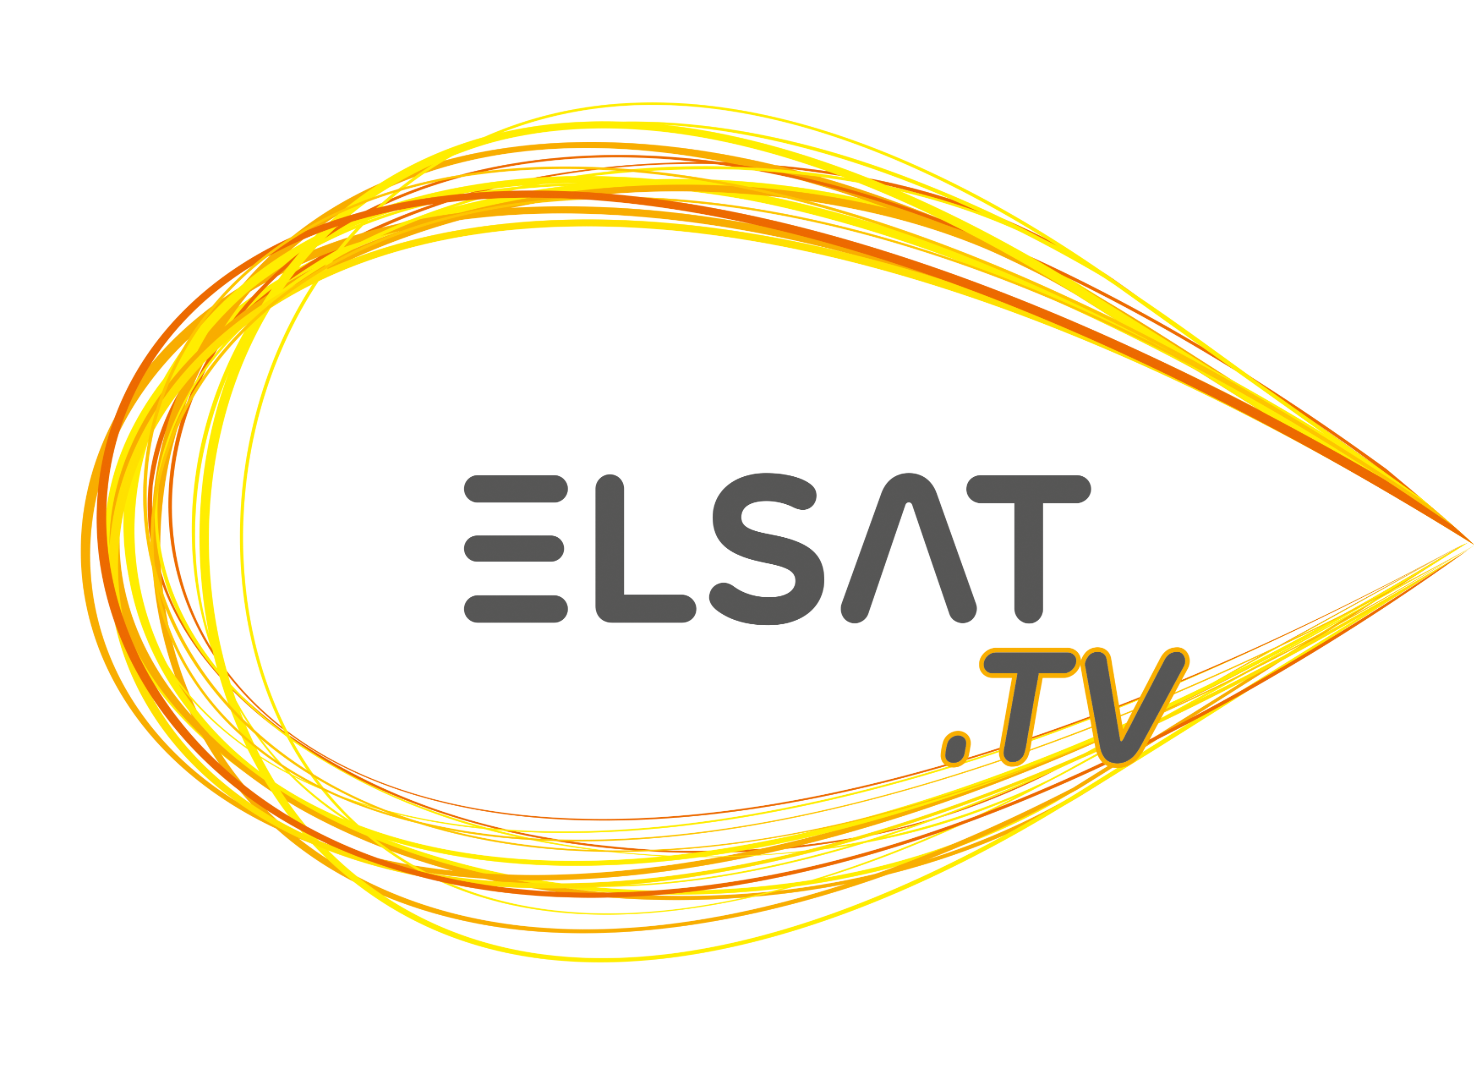 ELSAT_TV.png